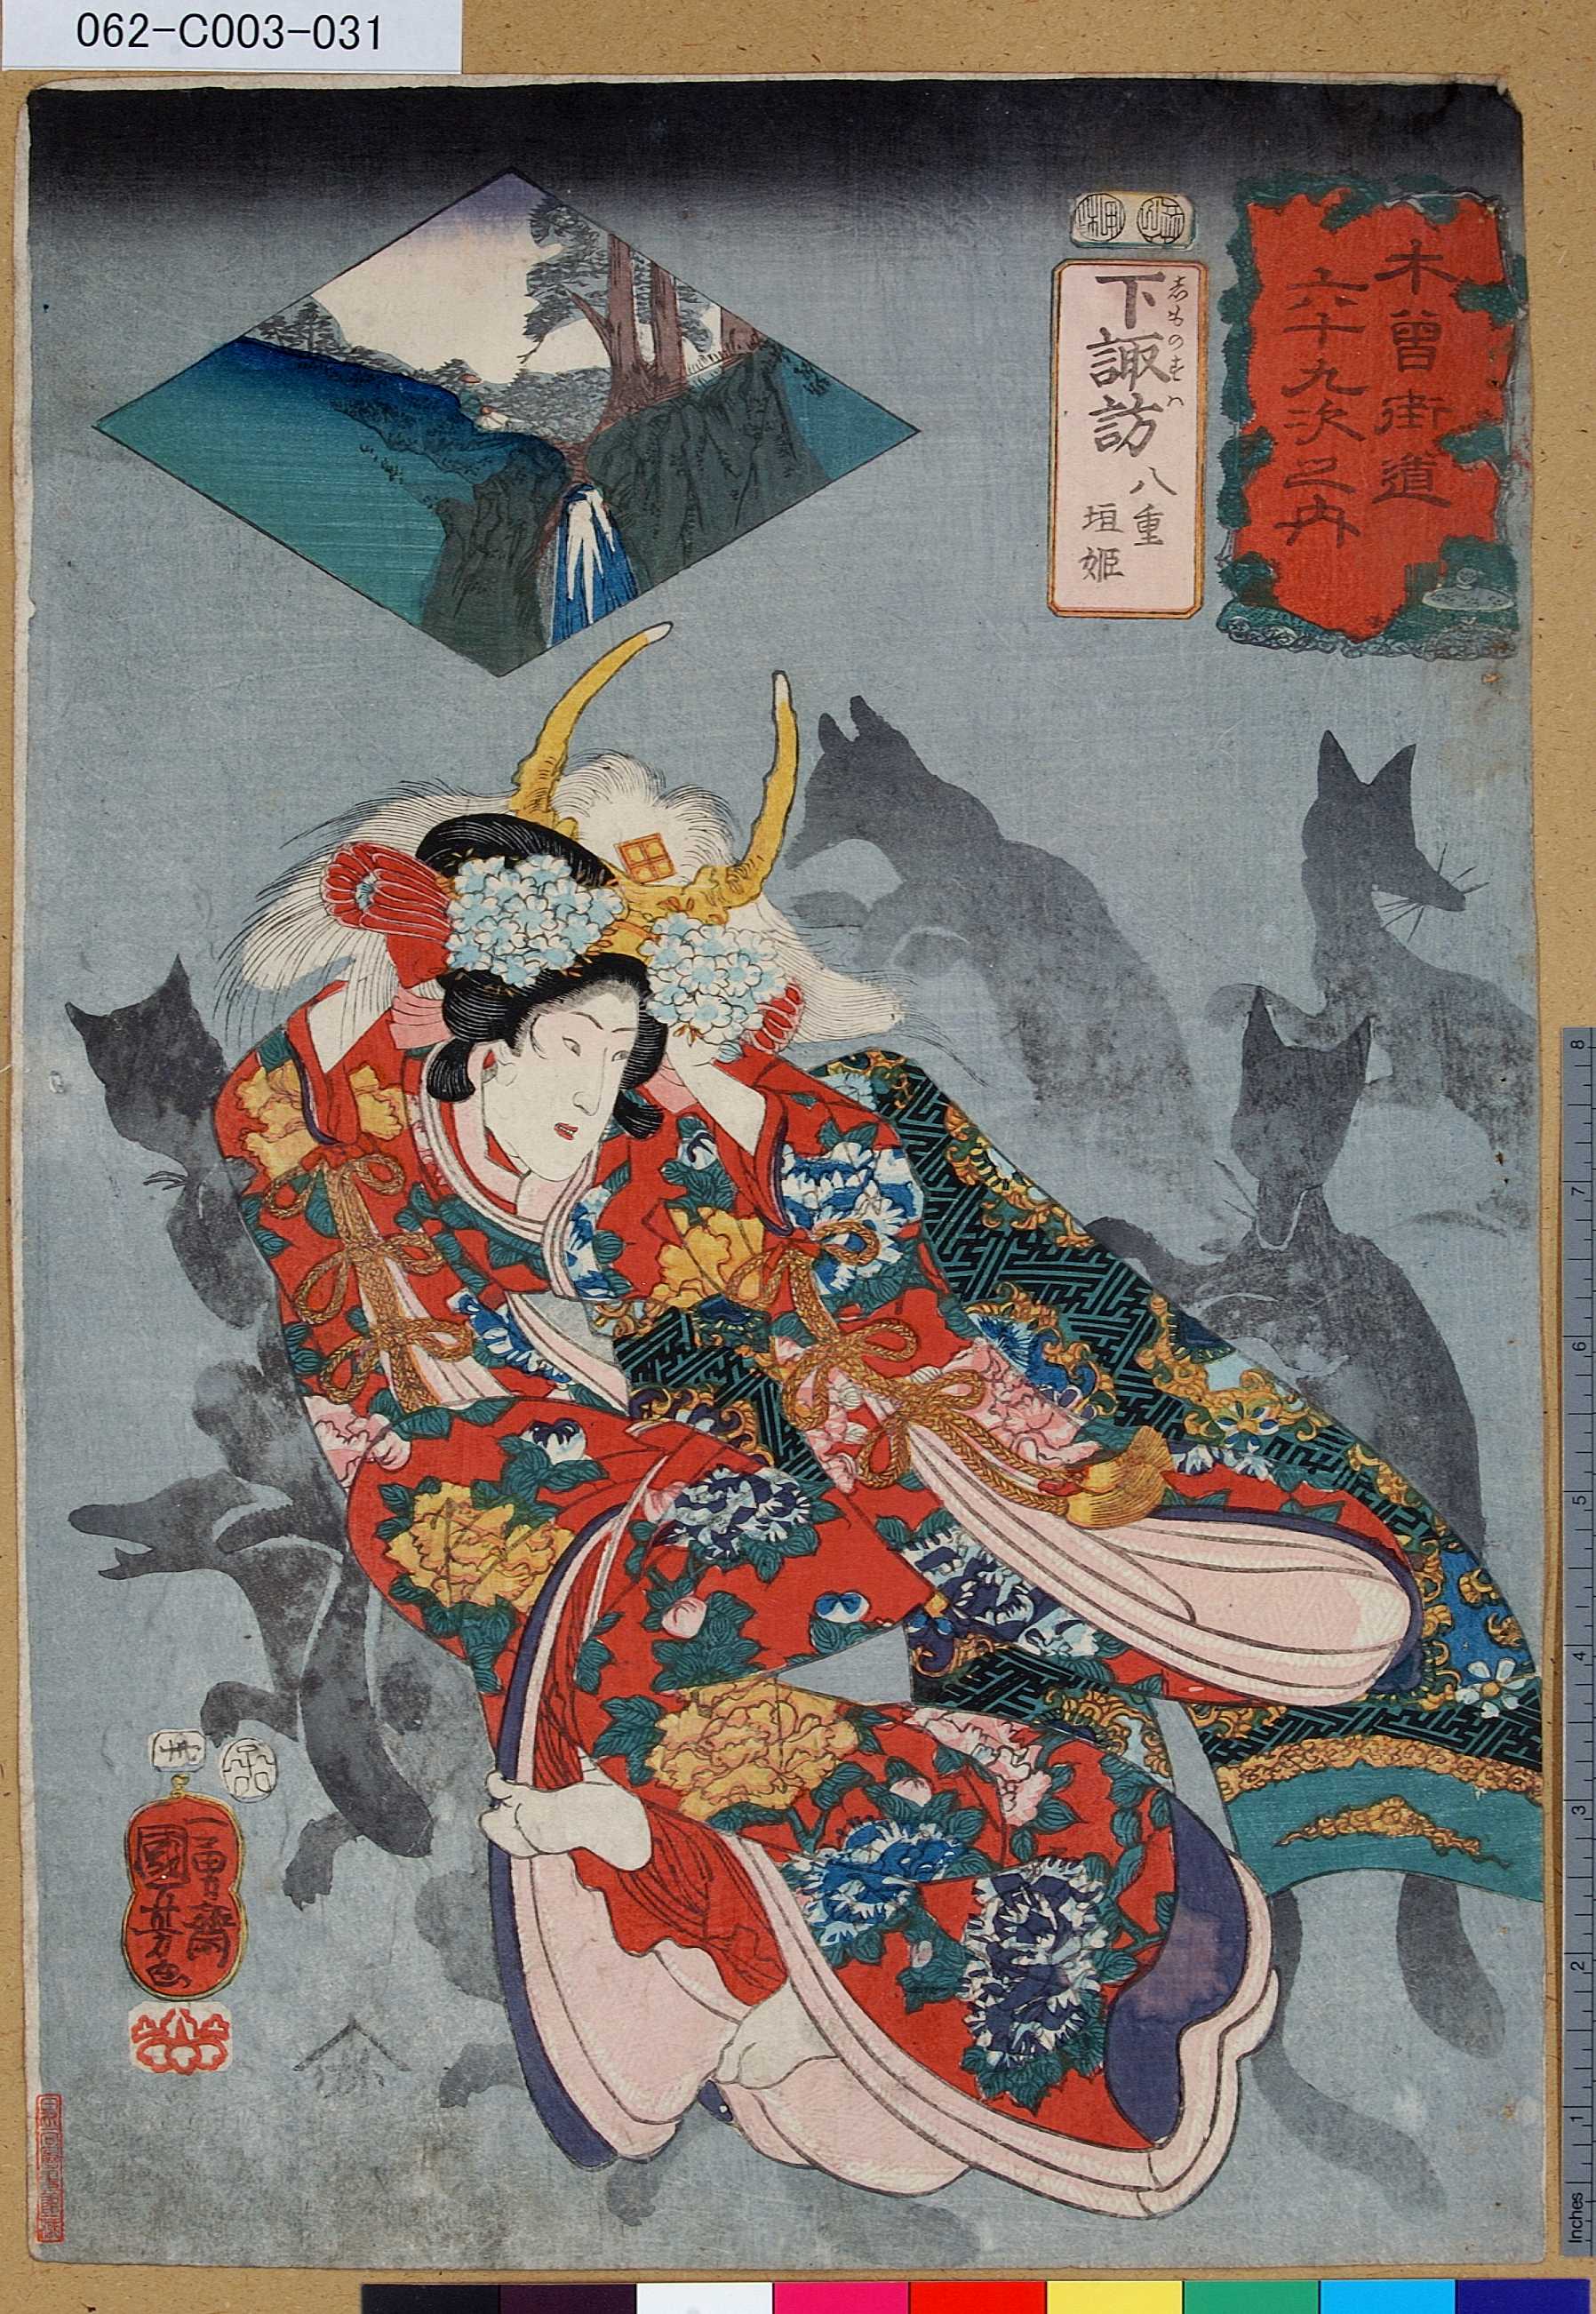 Utagawa Kuniyoshi: 「木曾街道六十九次之内」「卅」「下諏訪 八重垣姫